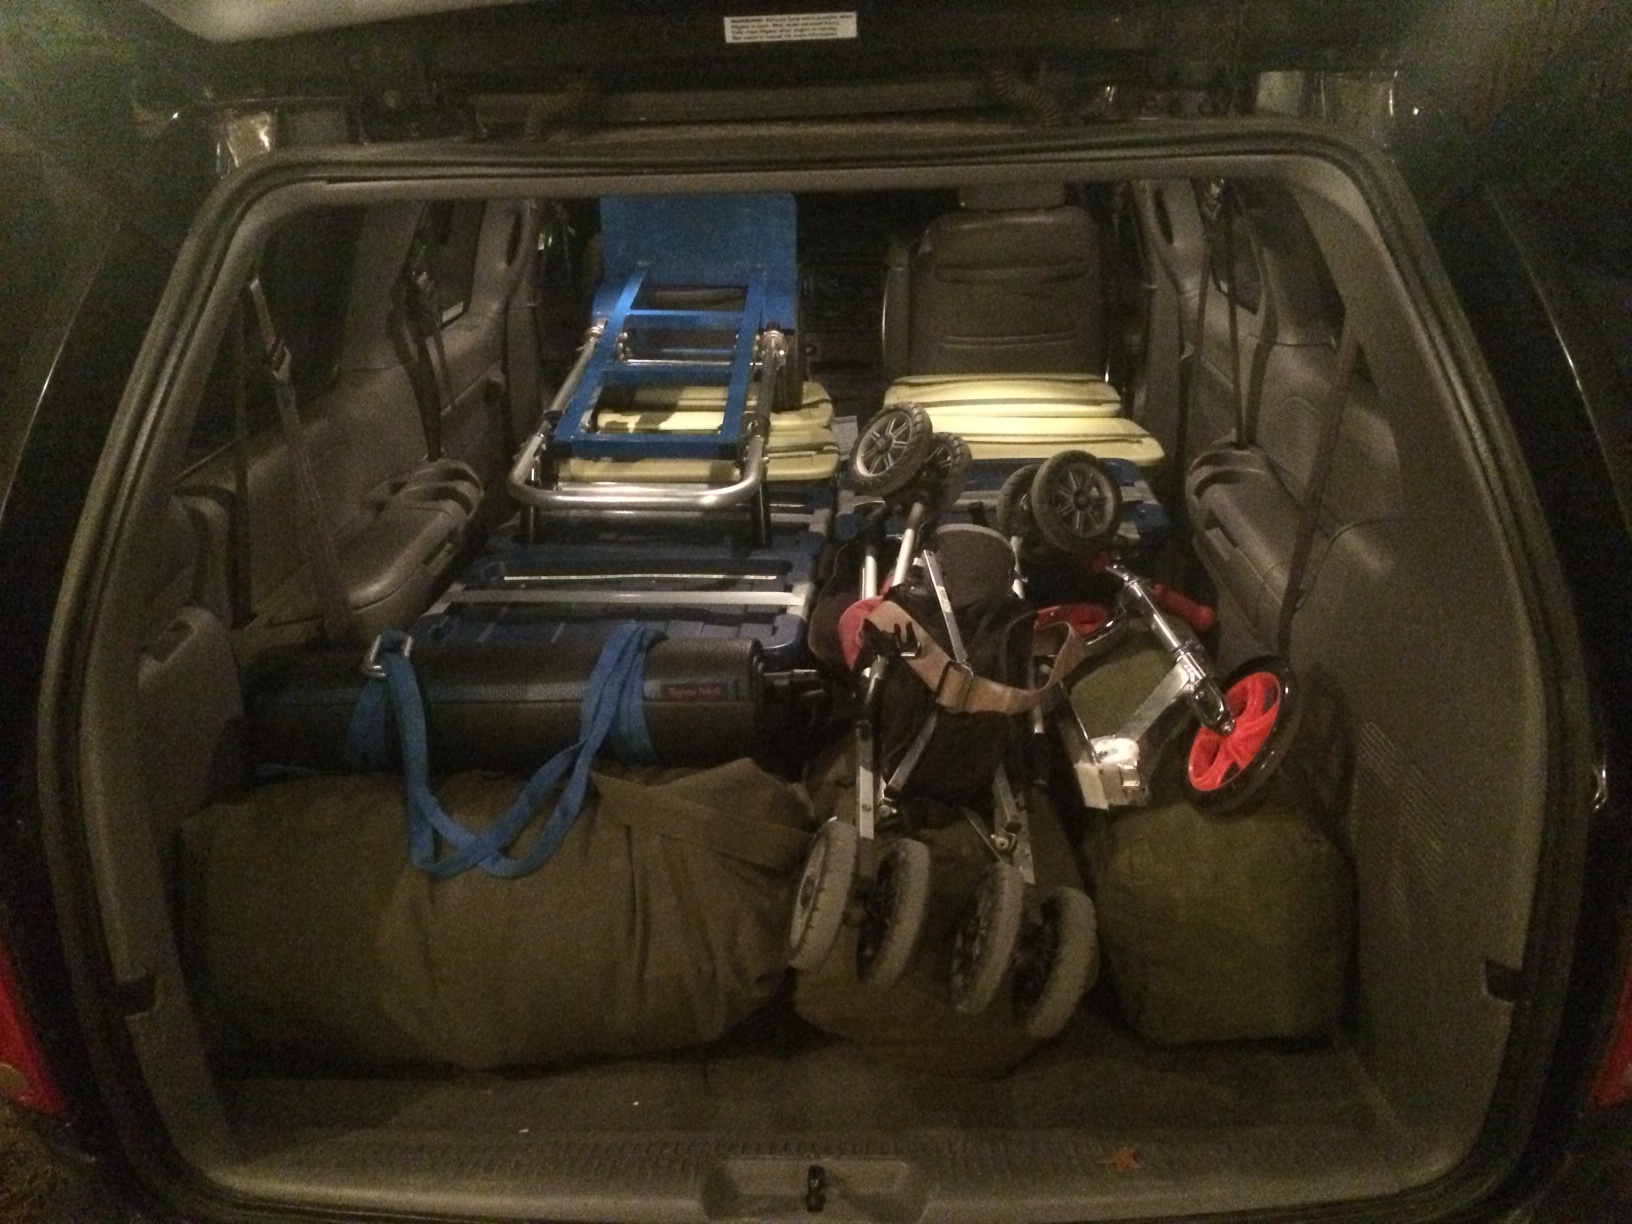 Packed van